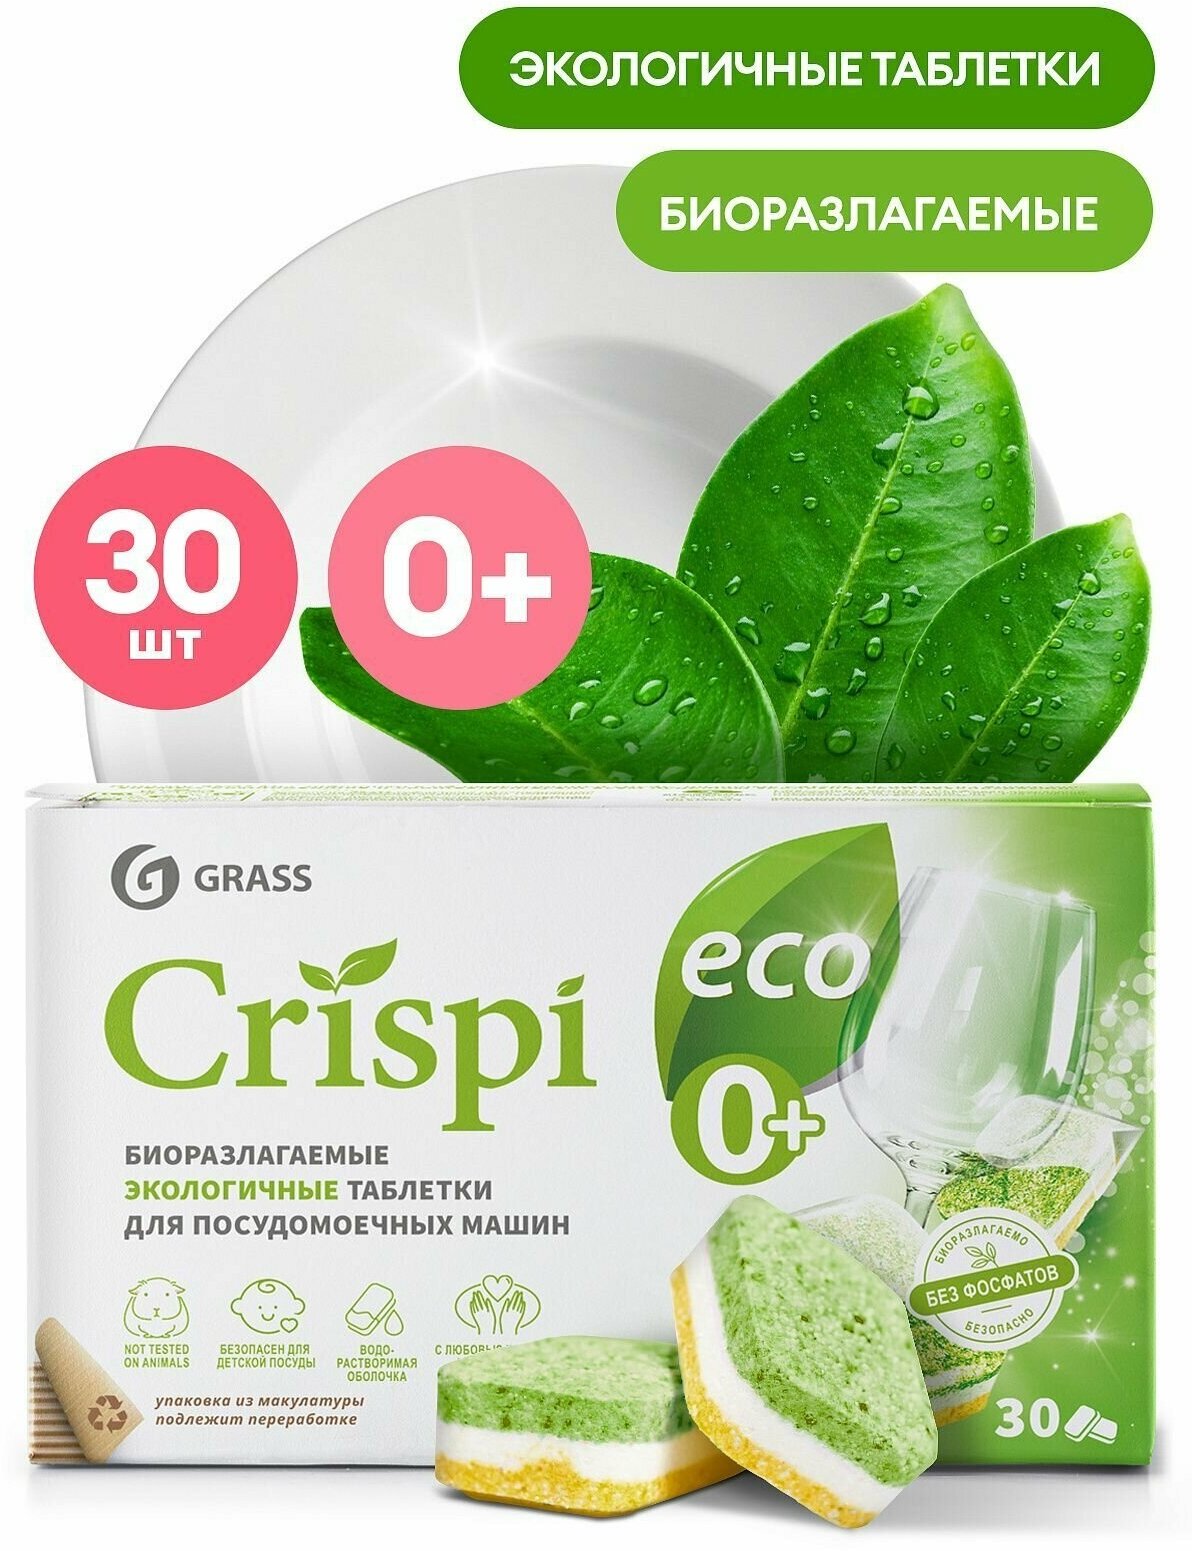 Таблетки для посудомоечной машины экологичные биоразлагаемые Grass CRISPI посудомойка 30 штук для посудомоечных машин